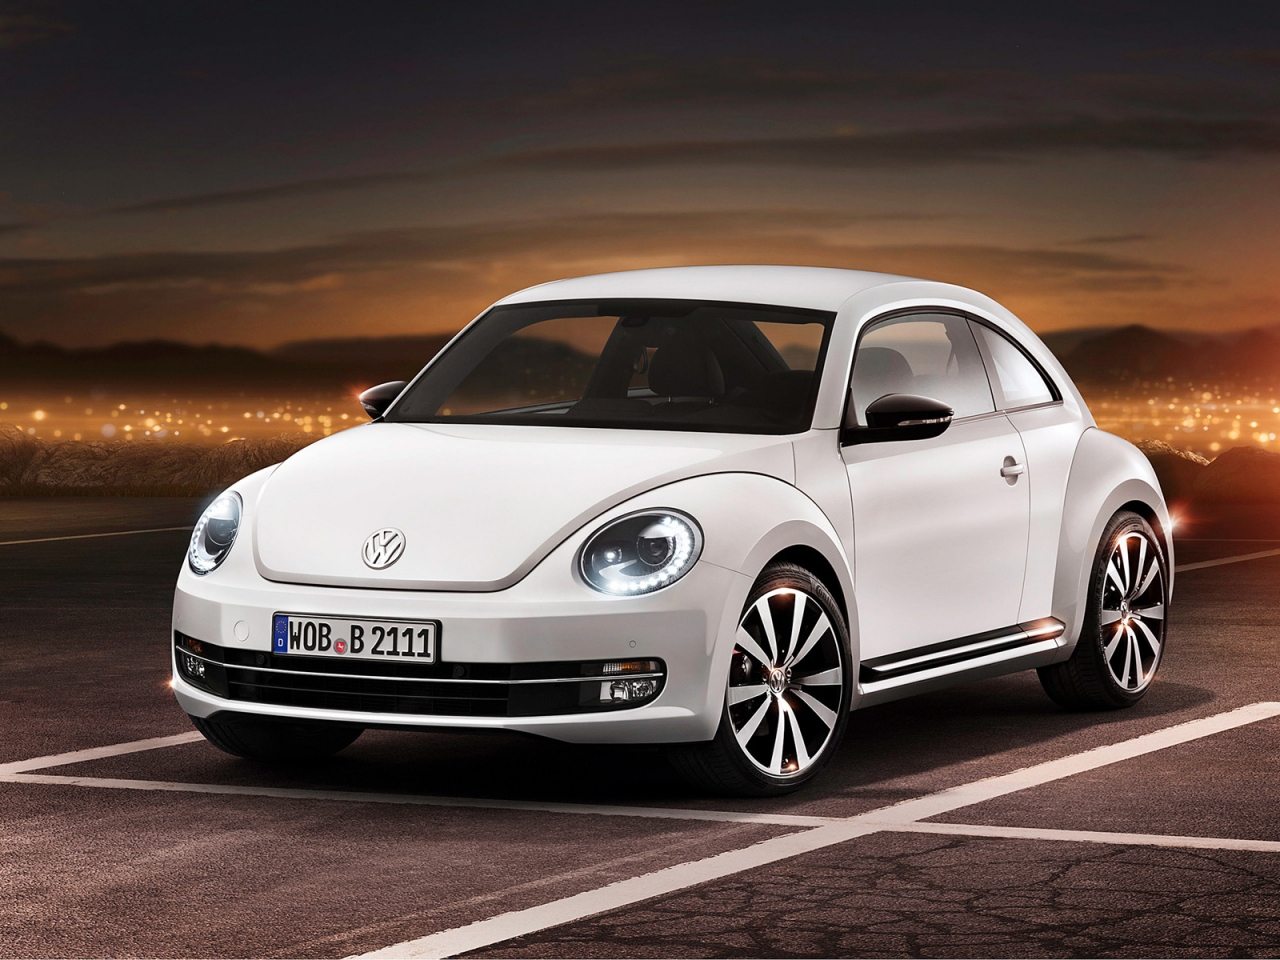 2012 Volkswagen Beetle for 1280 x 960 resolution